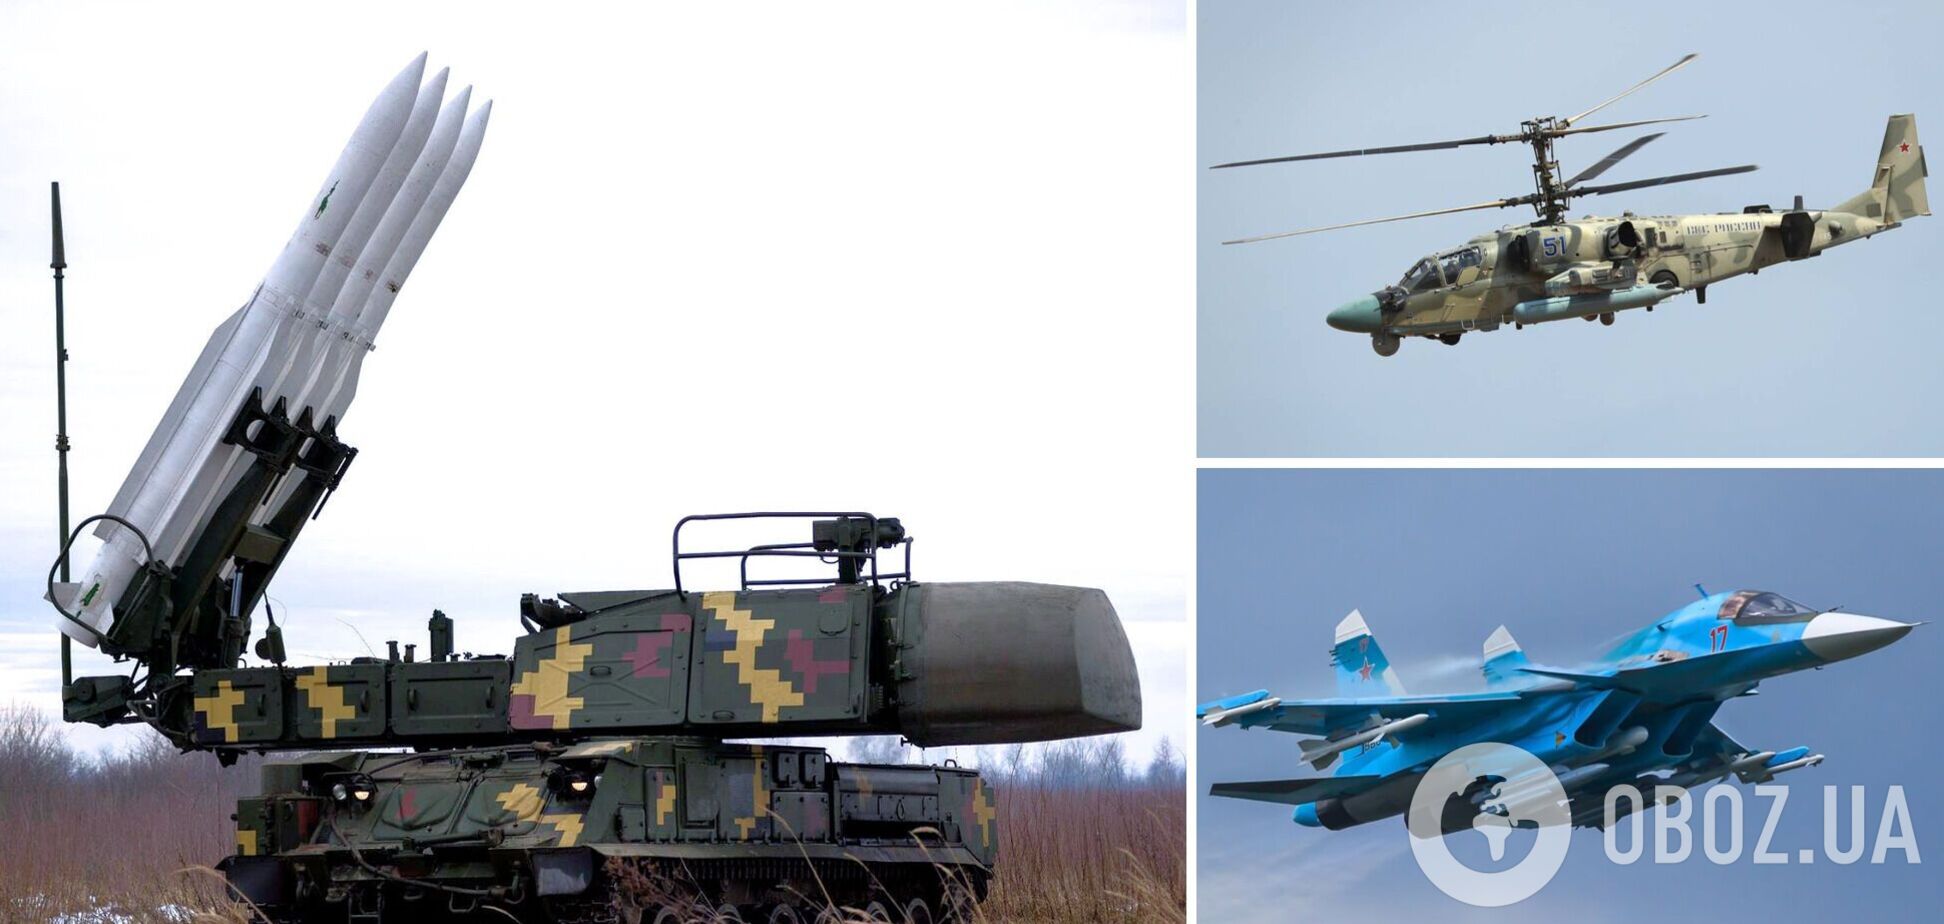 Украинские защитники уничтожают вражеские самолеты и вертолеты